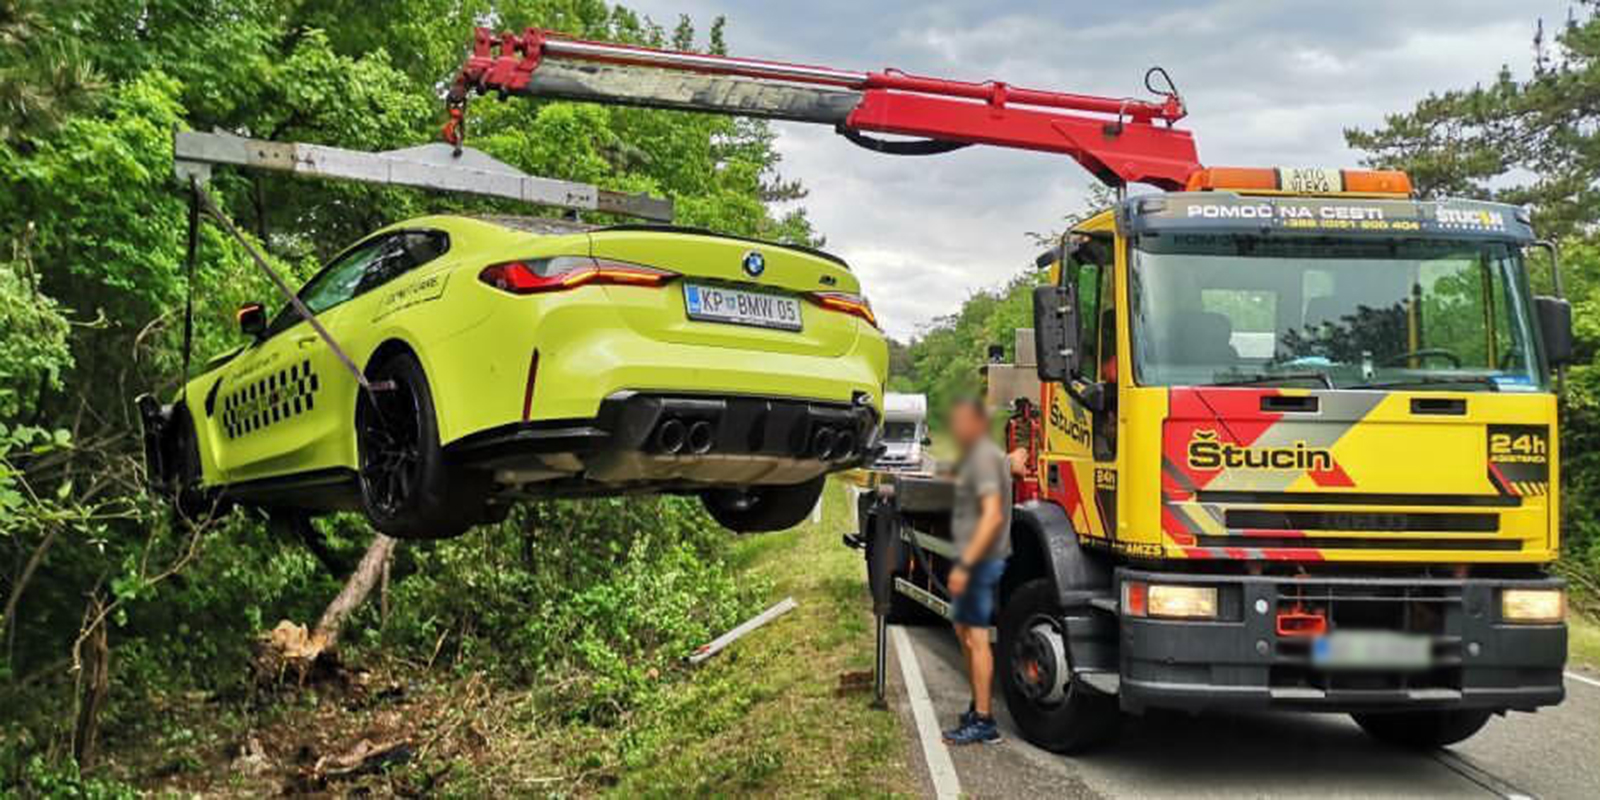 RAZKRIVAMO: Prvi razbiti BMW M4 v Sloveniji je ravno testno vozilo iz družbe Avto Aktiv!